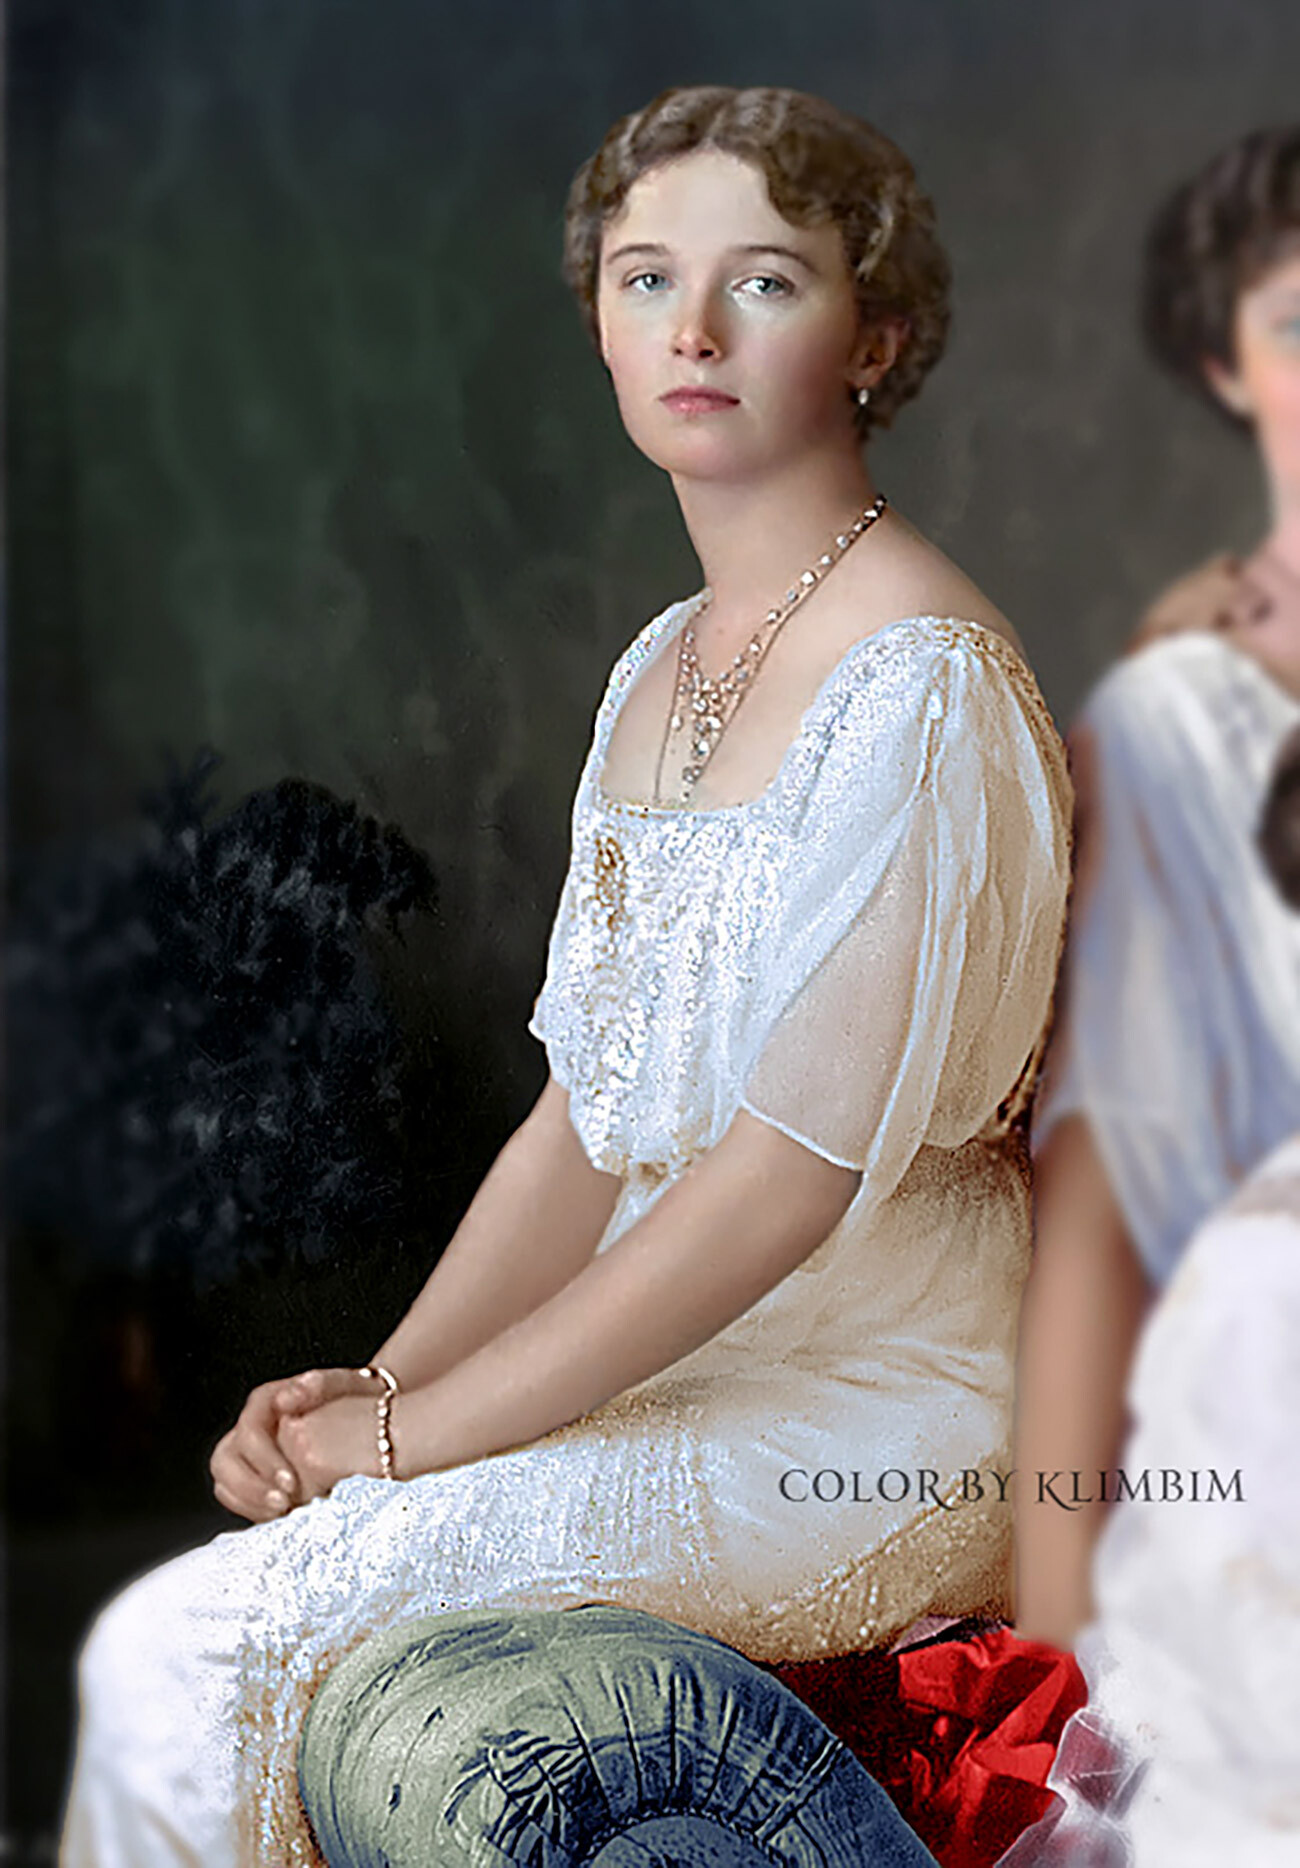 La granduchessa Olga Romanova

